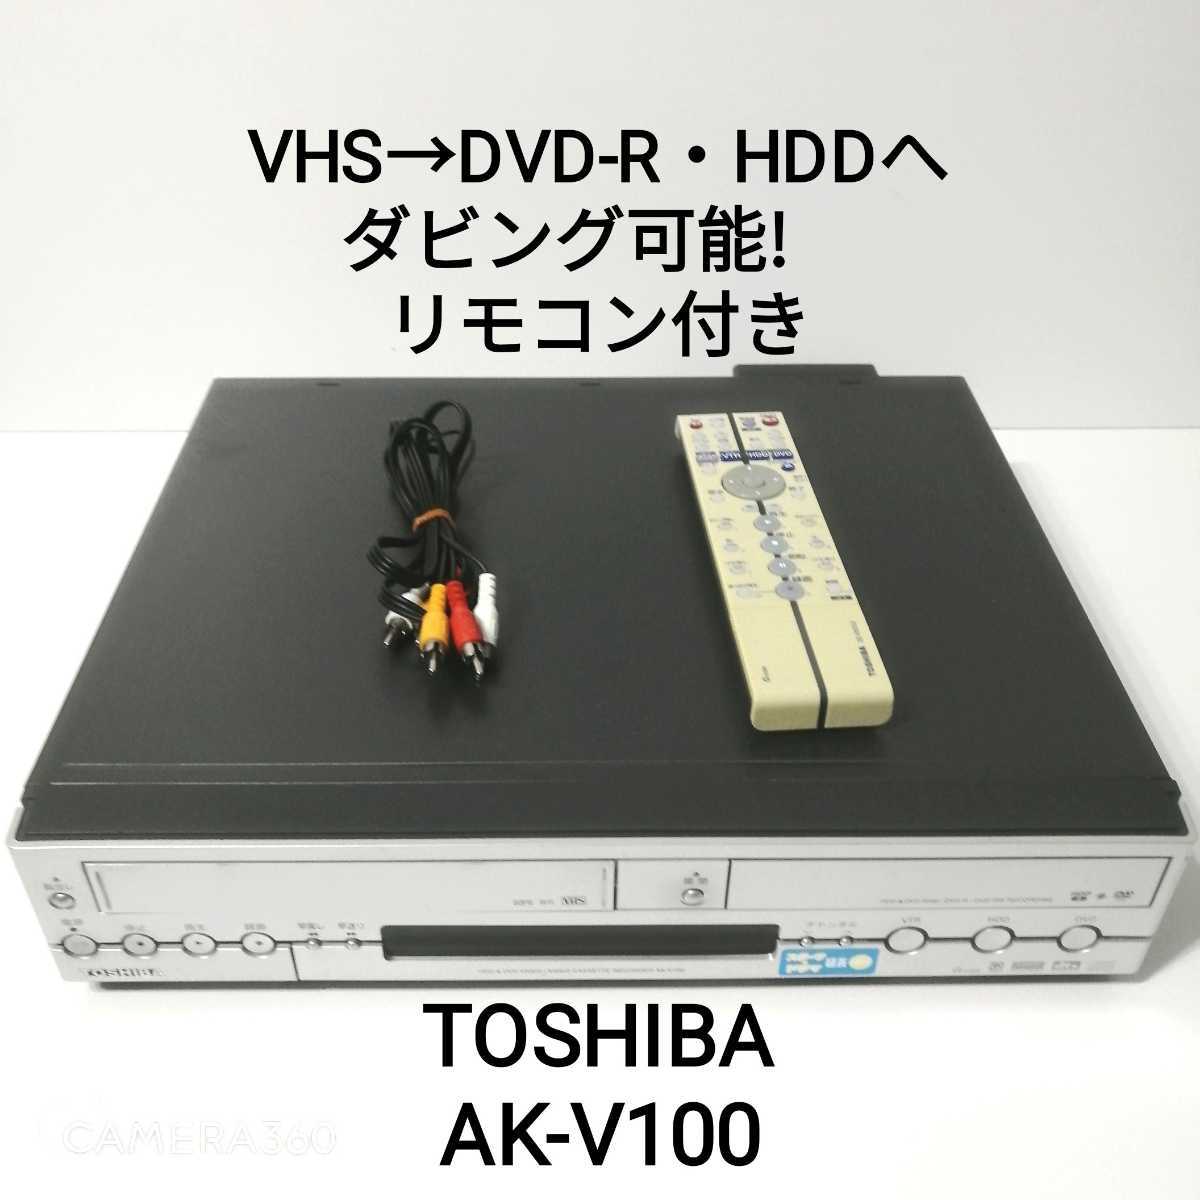 VHS→DVD-R/HDDへダビング可能！★3色ケーブル・リモコン付き★TOTOSHIBA AK-V100★VHS　DVD HDD プレーヤー　 レコーダー